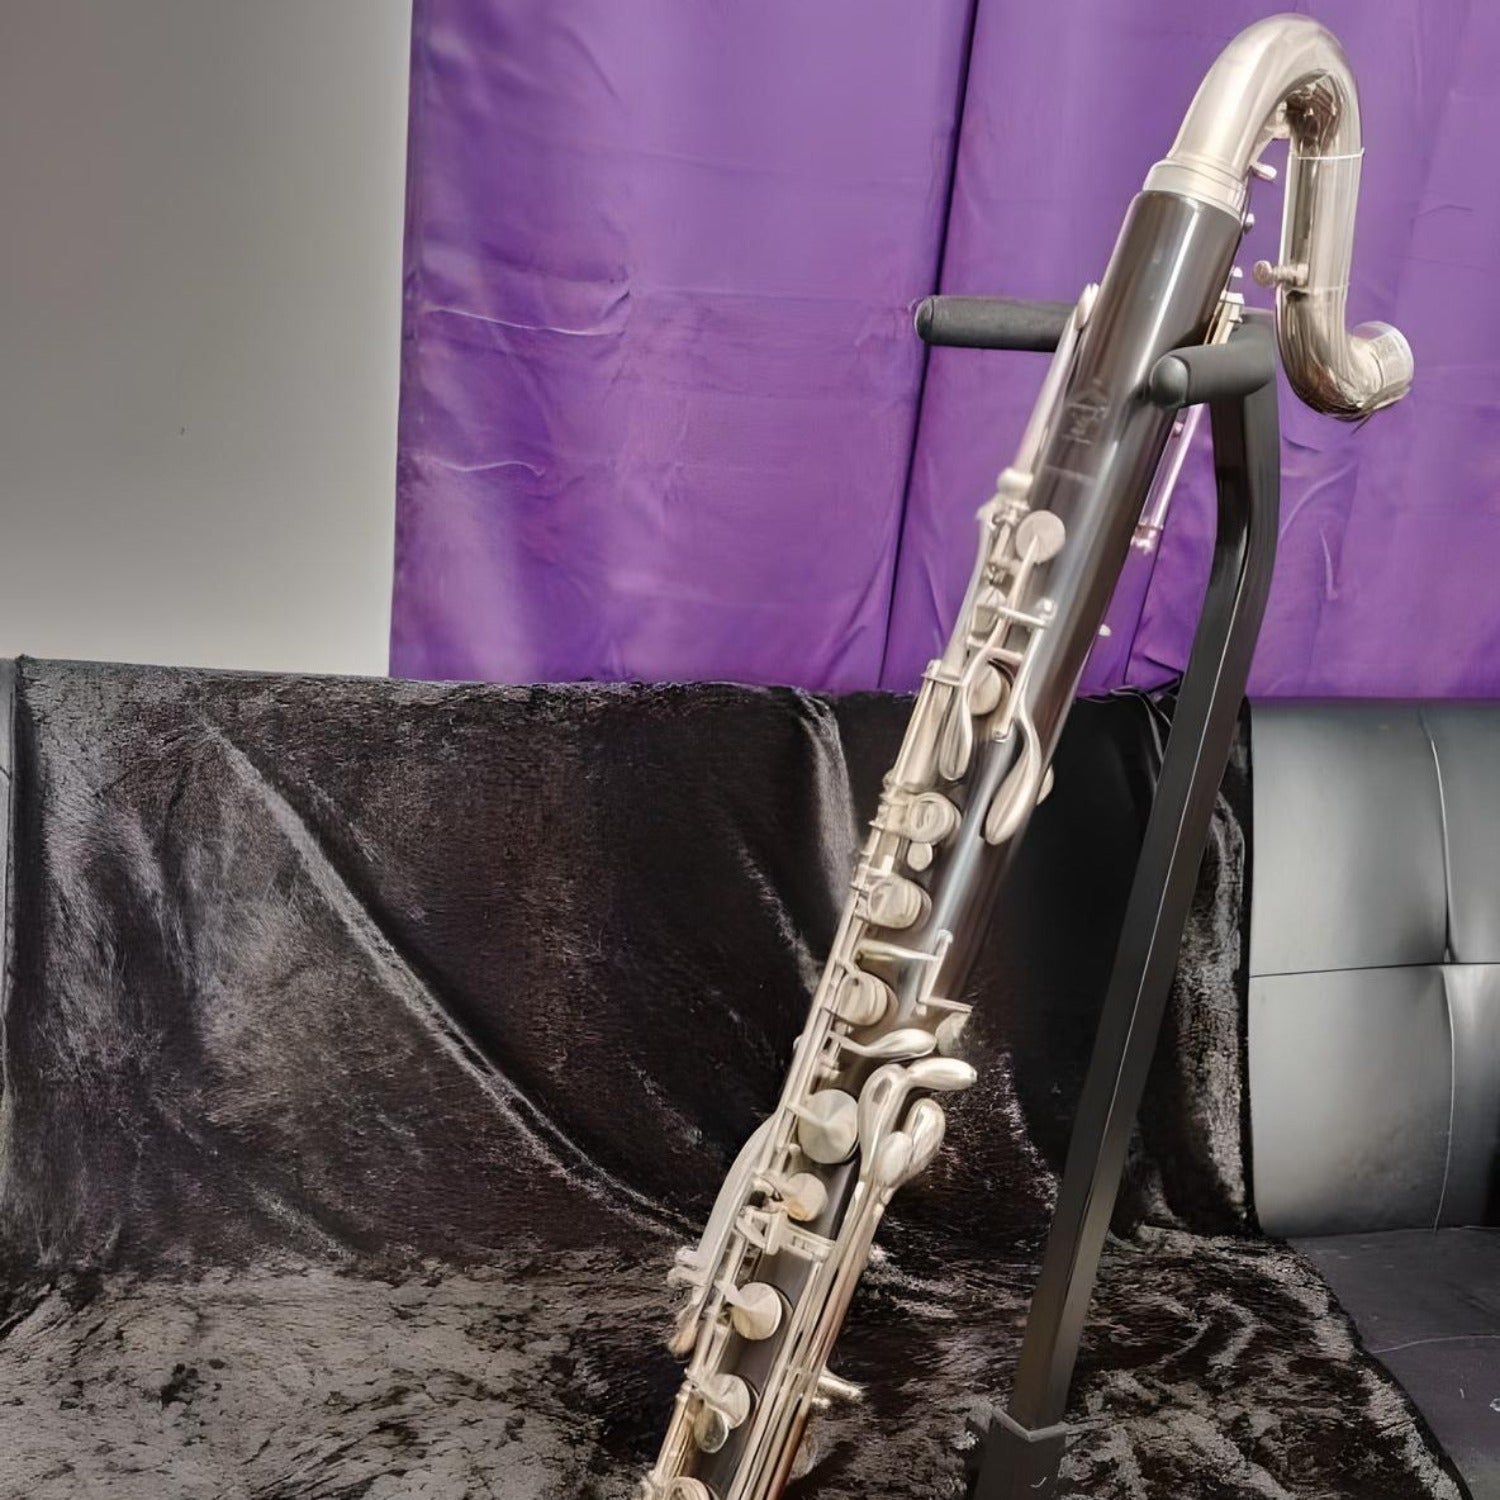 bass clarinet assembled on a stand, closeup of upper half